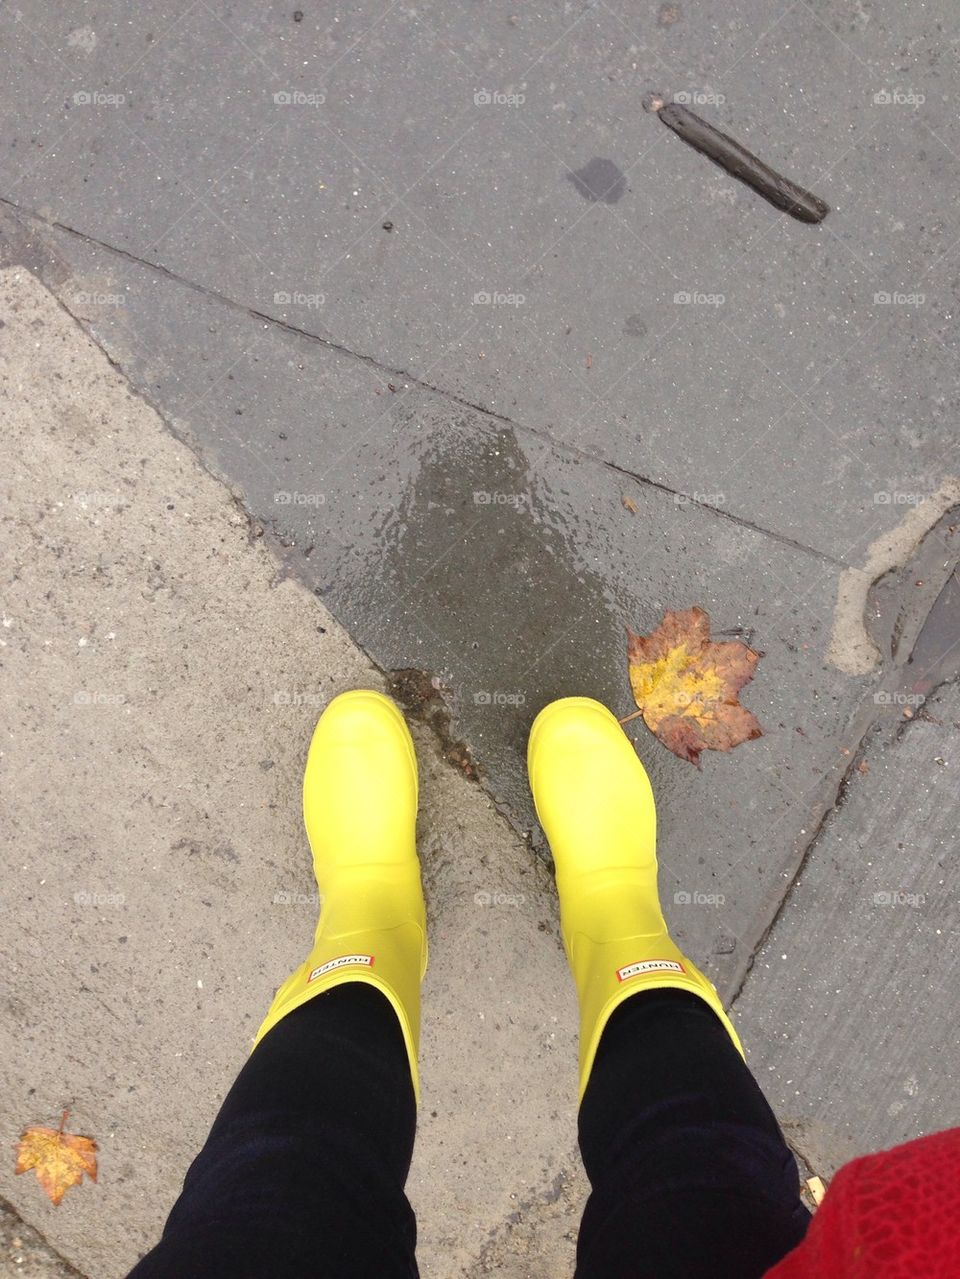 Sunny boots, rainy day